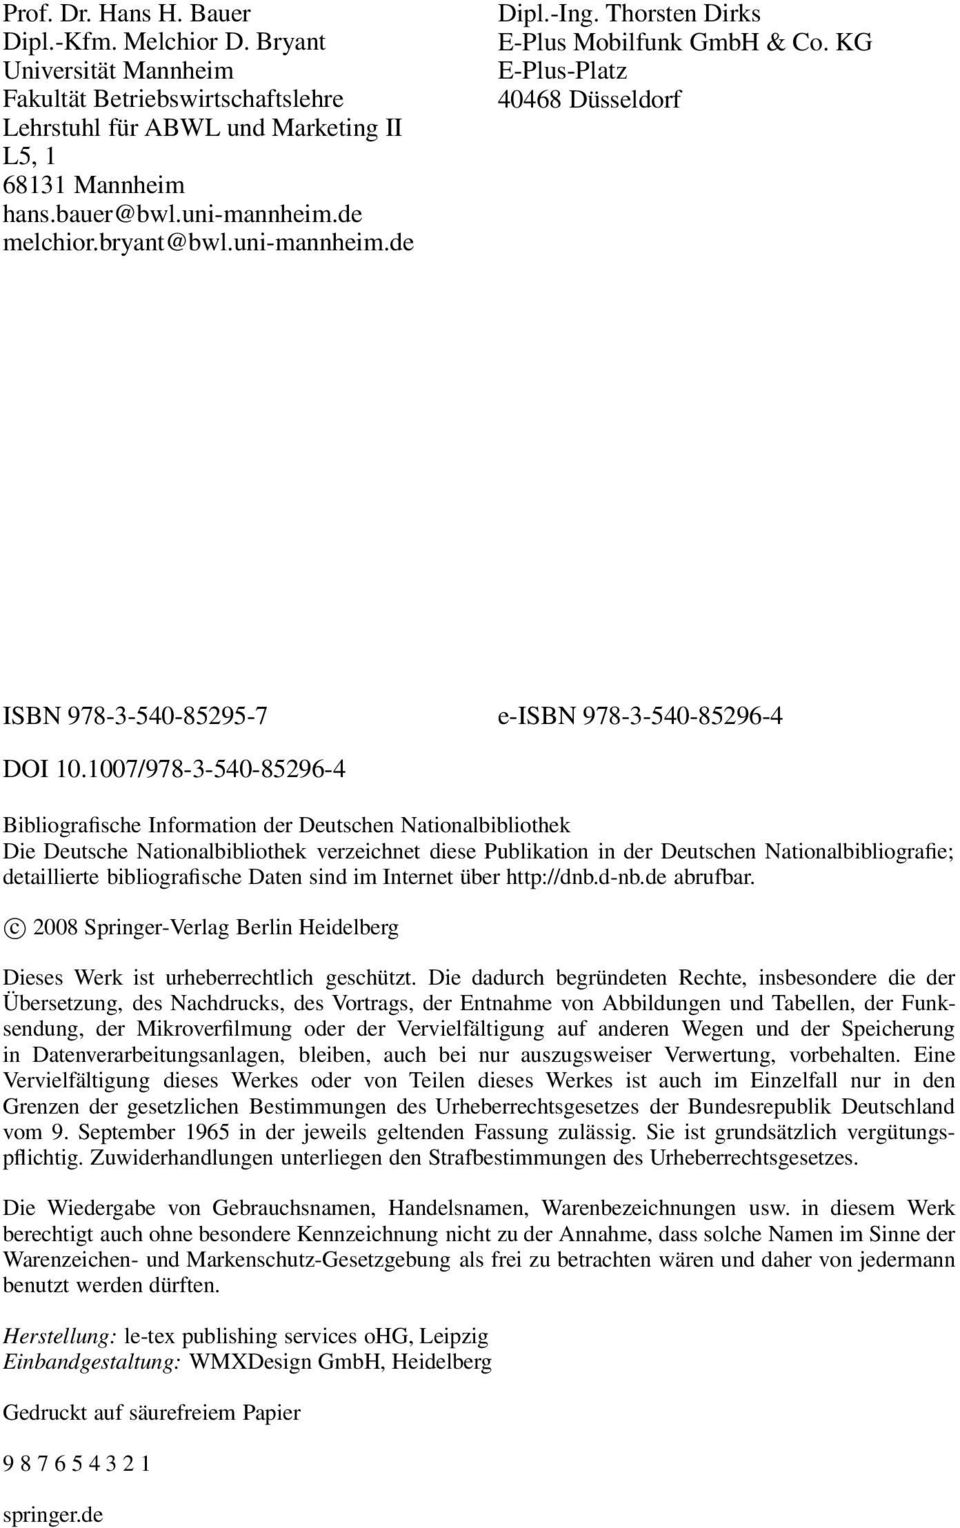 1007/978-3-540-85296-4 Bibliografische Information der Deutschen Nationalbibliothek Die Deutsche Nationalbibliothek verzeichnet diese Publikation in der Deutschen Nationalbibliografie; detaillierte